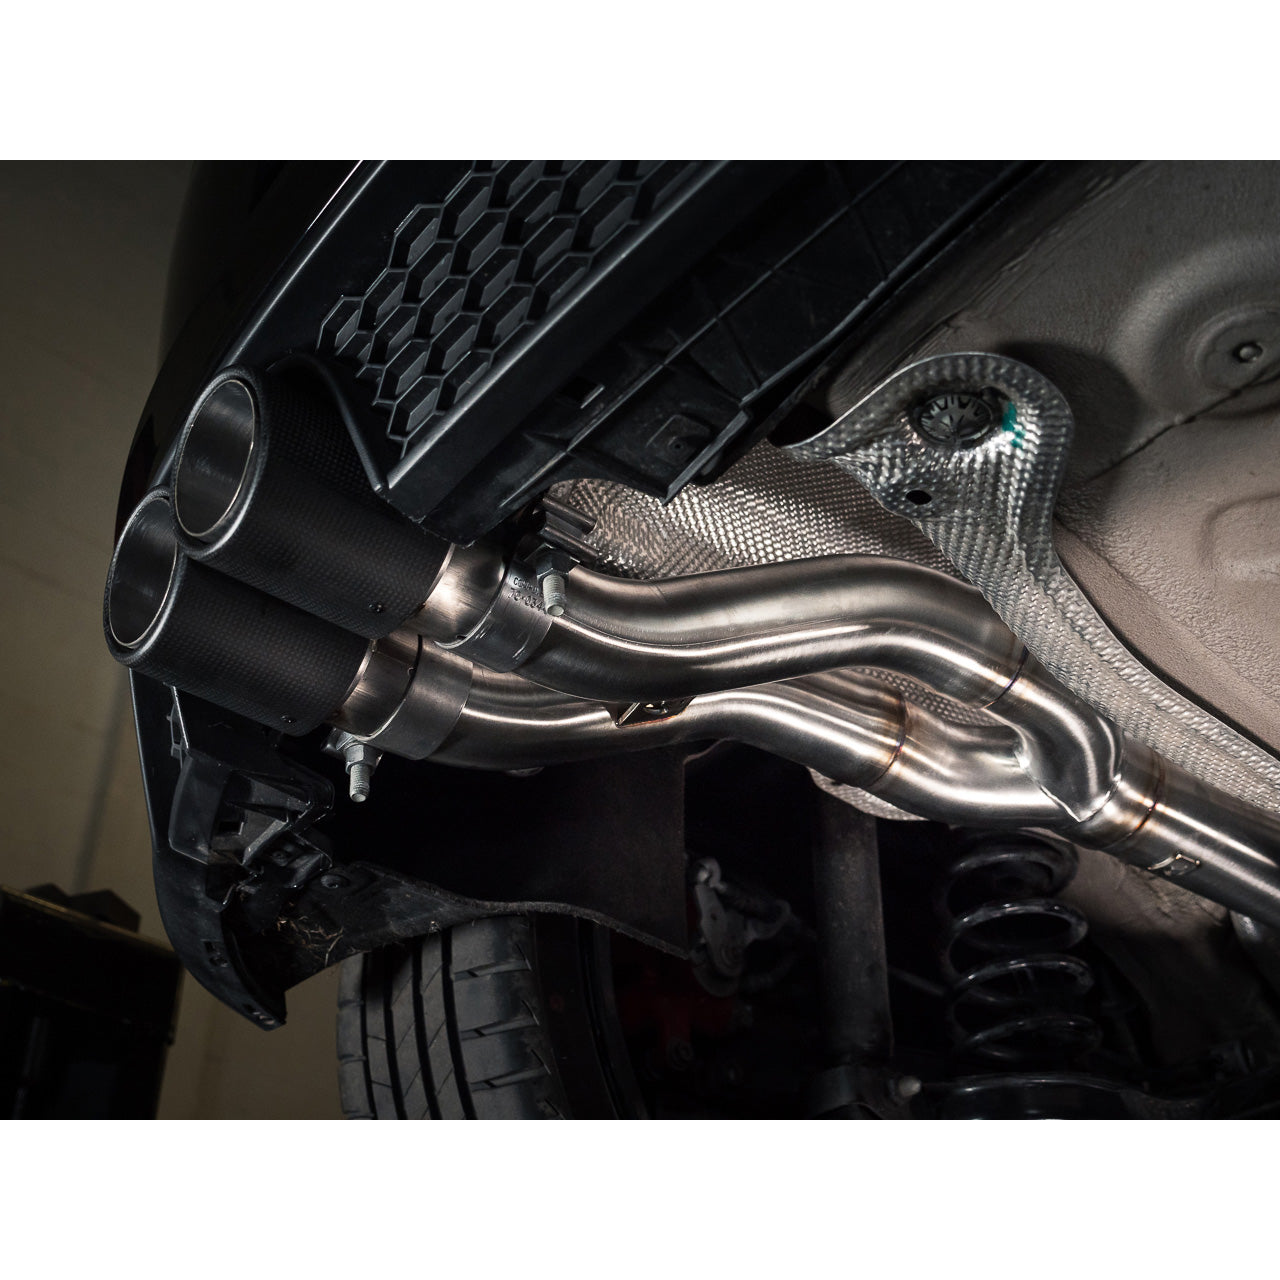 Cobra Venom Turbo Back Performance Exhaust - VW Polo GTI AW Mk6 2.0 TSI (19-21)